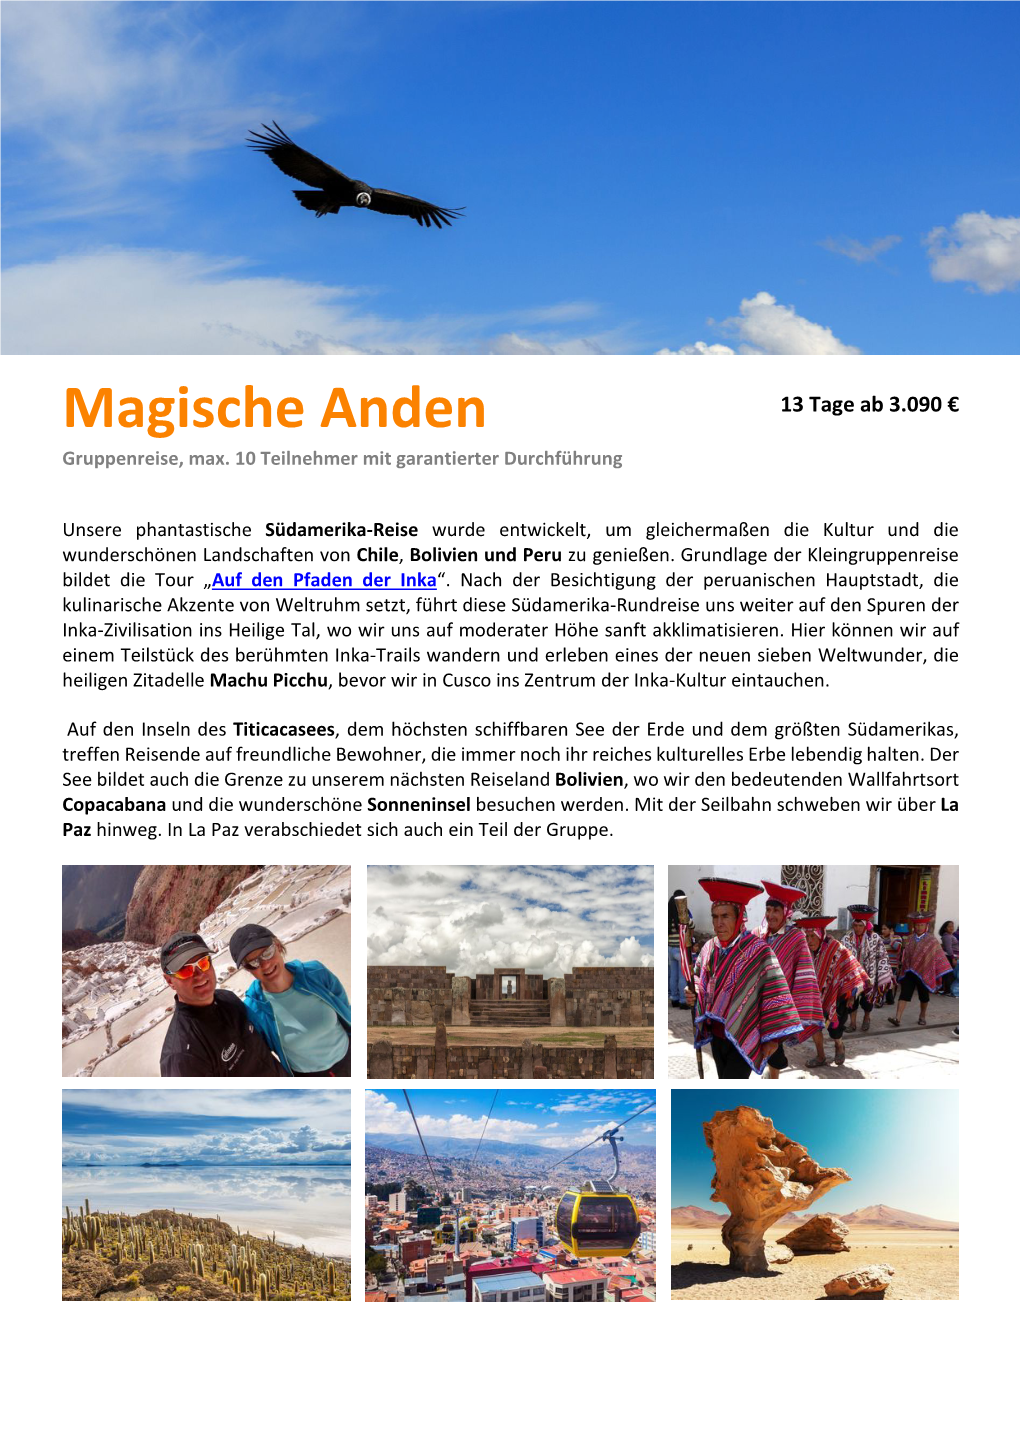 Magische Anden 13 Tage Ab 3.090 € Gruppenreise, Max